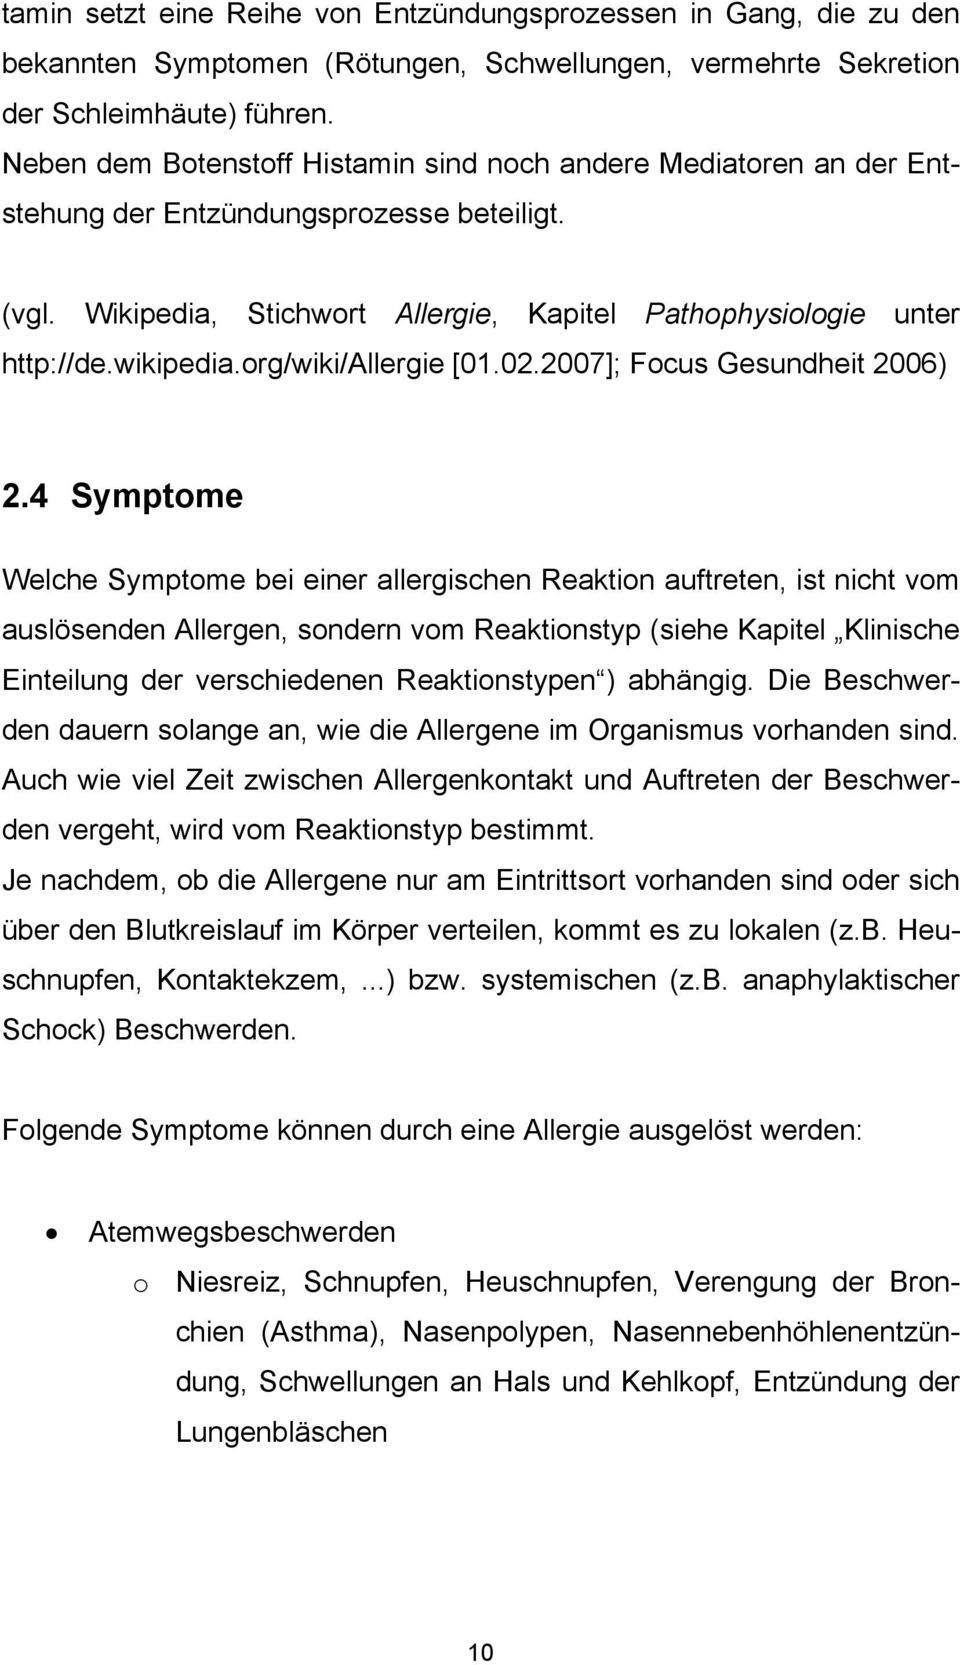 org/wiki/allergie [01.02.2007]; Focus Gesundheit 2006) 2.